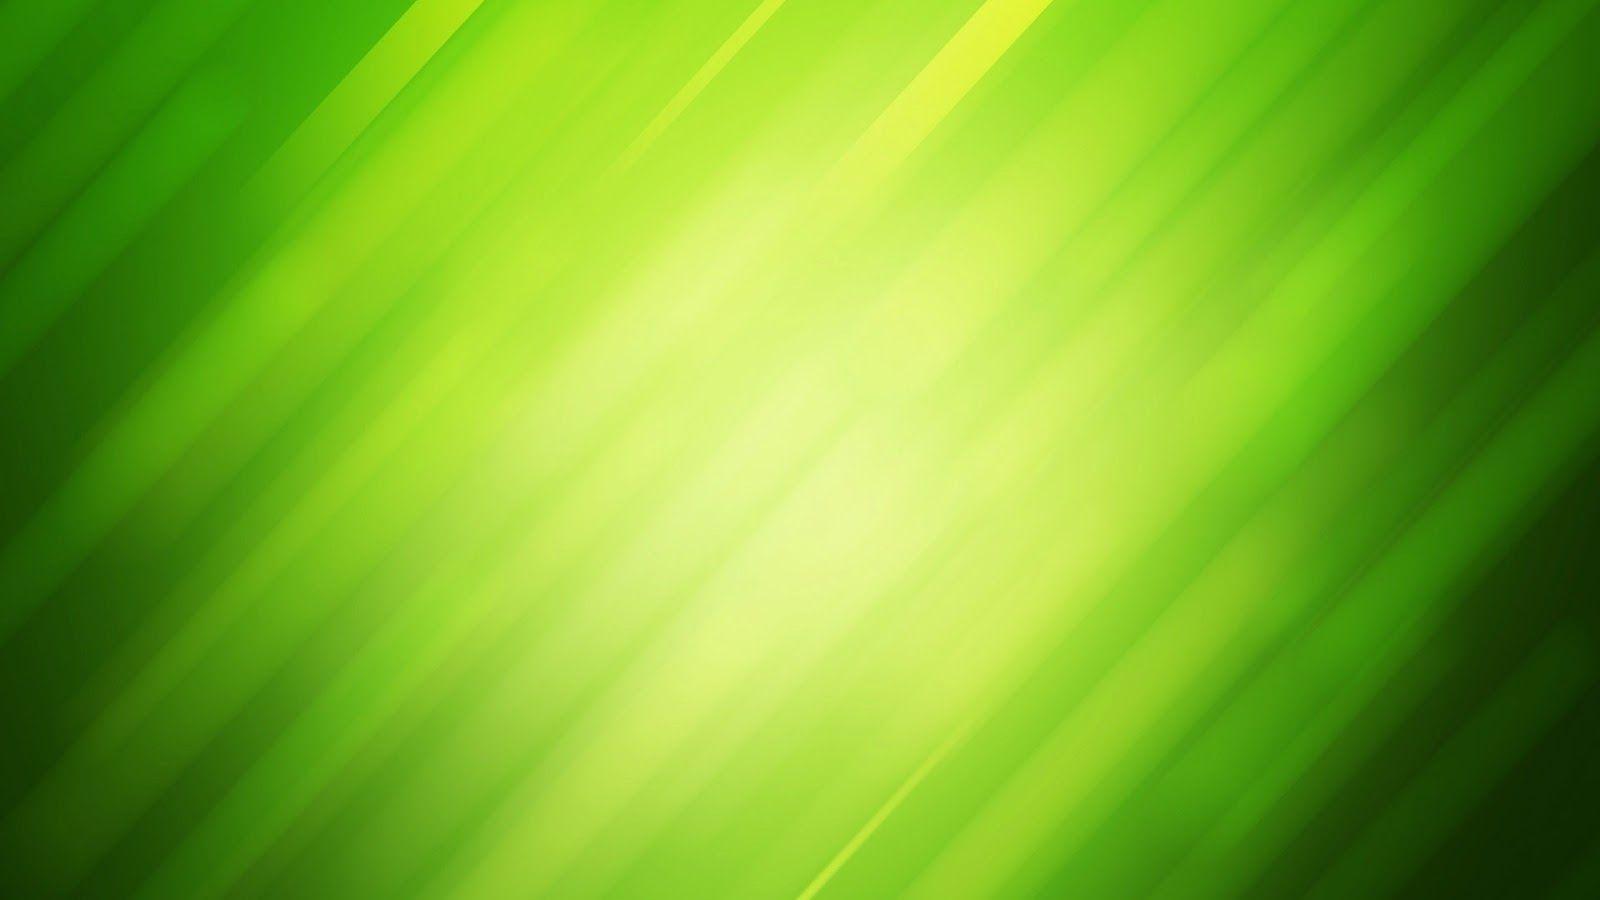 Hình nền màu xanh lá cây (Green wallpapers): Chào mừng đến với một thế giới màu xanh lá cây bao la và tươi sáng với những hình nền màu xanh lá cây. Thiết kế độc đáo và hoàn hảo, hình ảnh này không chỉ làm tươi sáng màn hình của bạn, mà còn tạo ra một không gian xanh mát, thích hợp trong mùa hè.